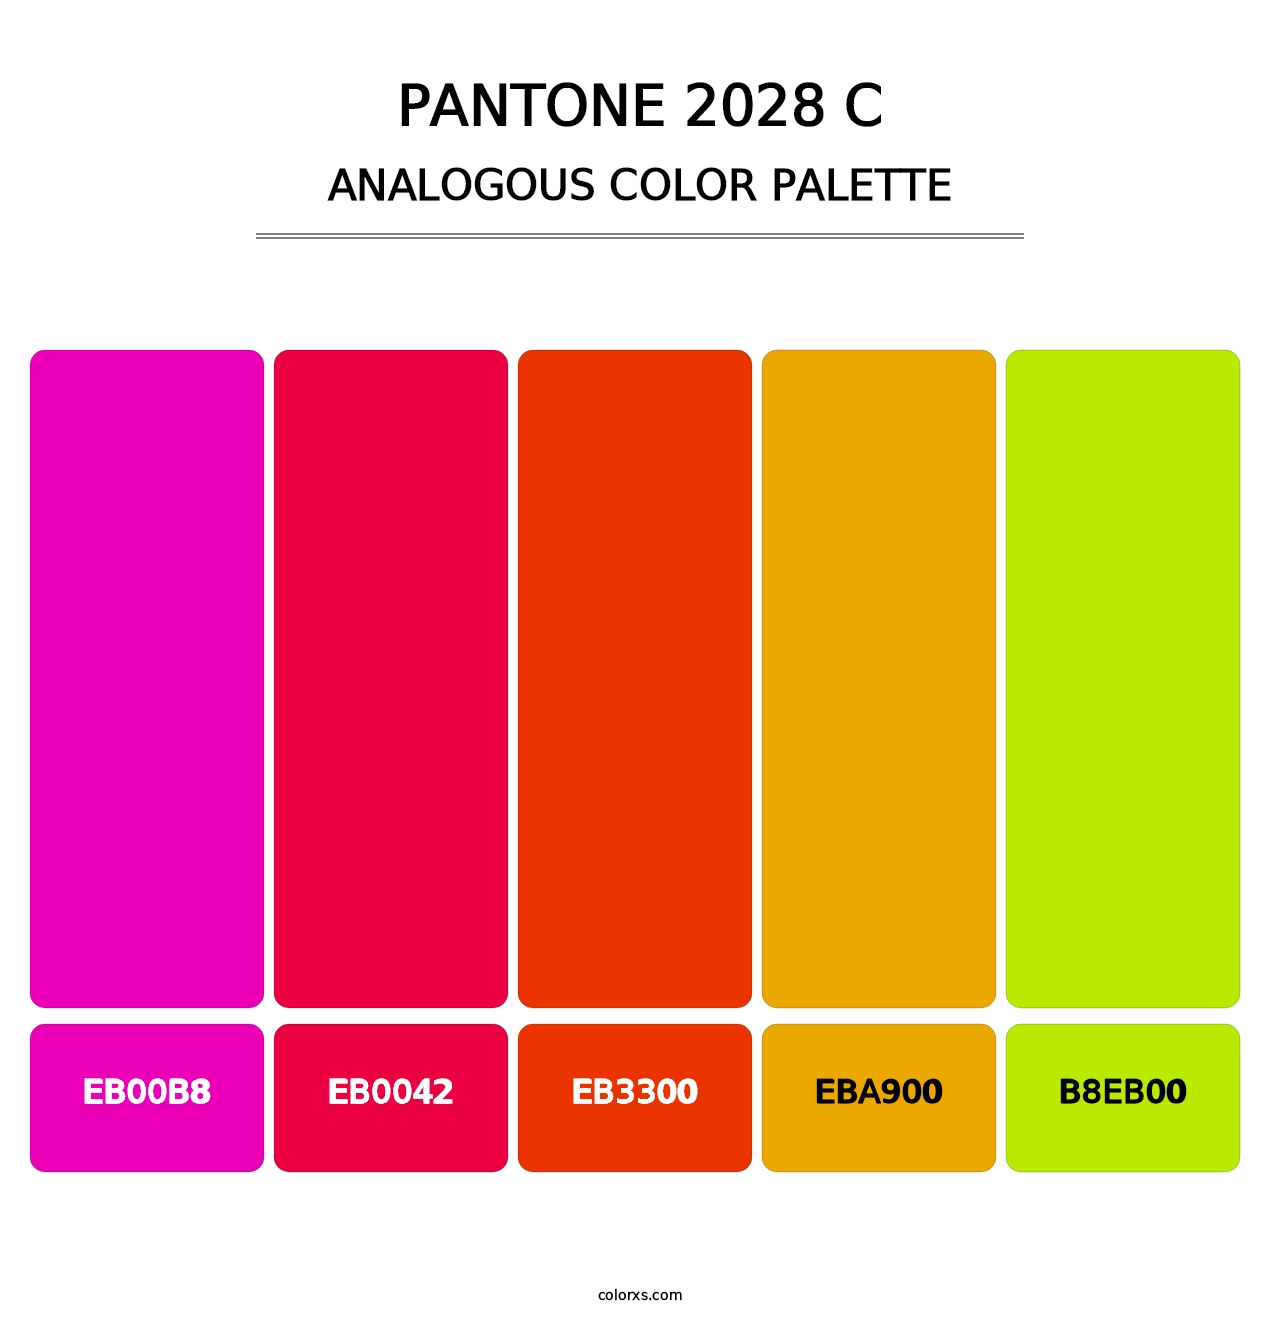 PANTONE 2028 C - Analogous Color Palette